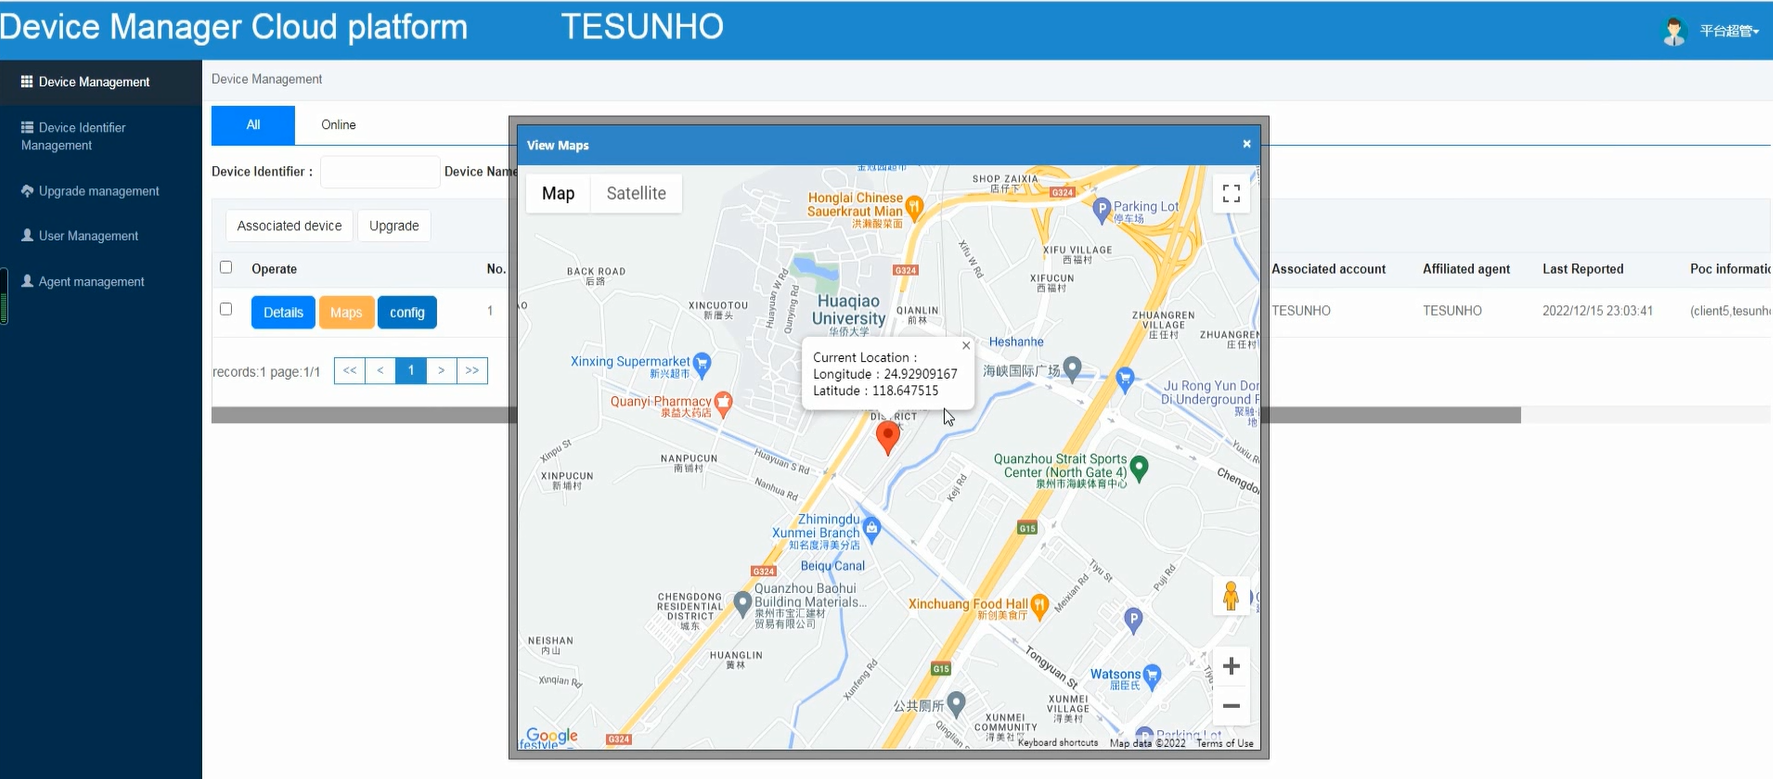 Tesunho Device Manager Cloud Platform